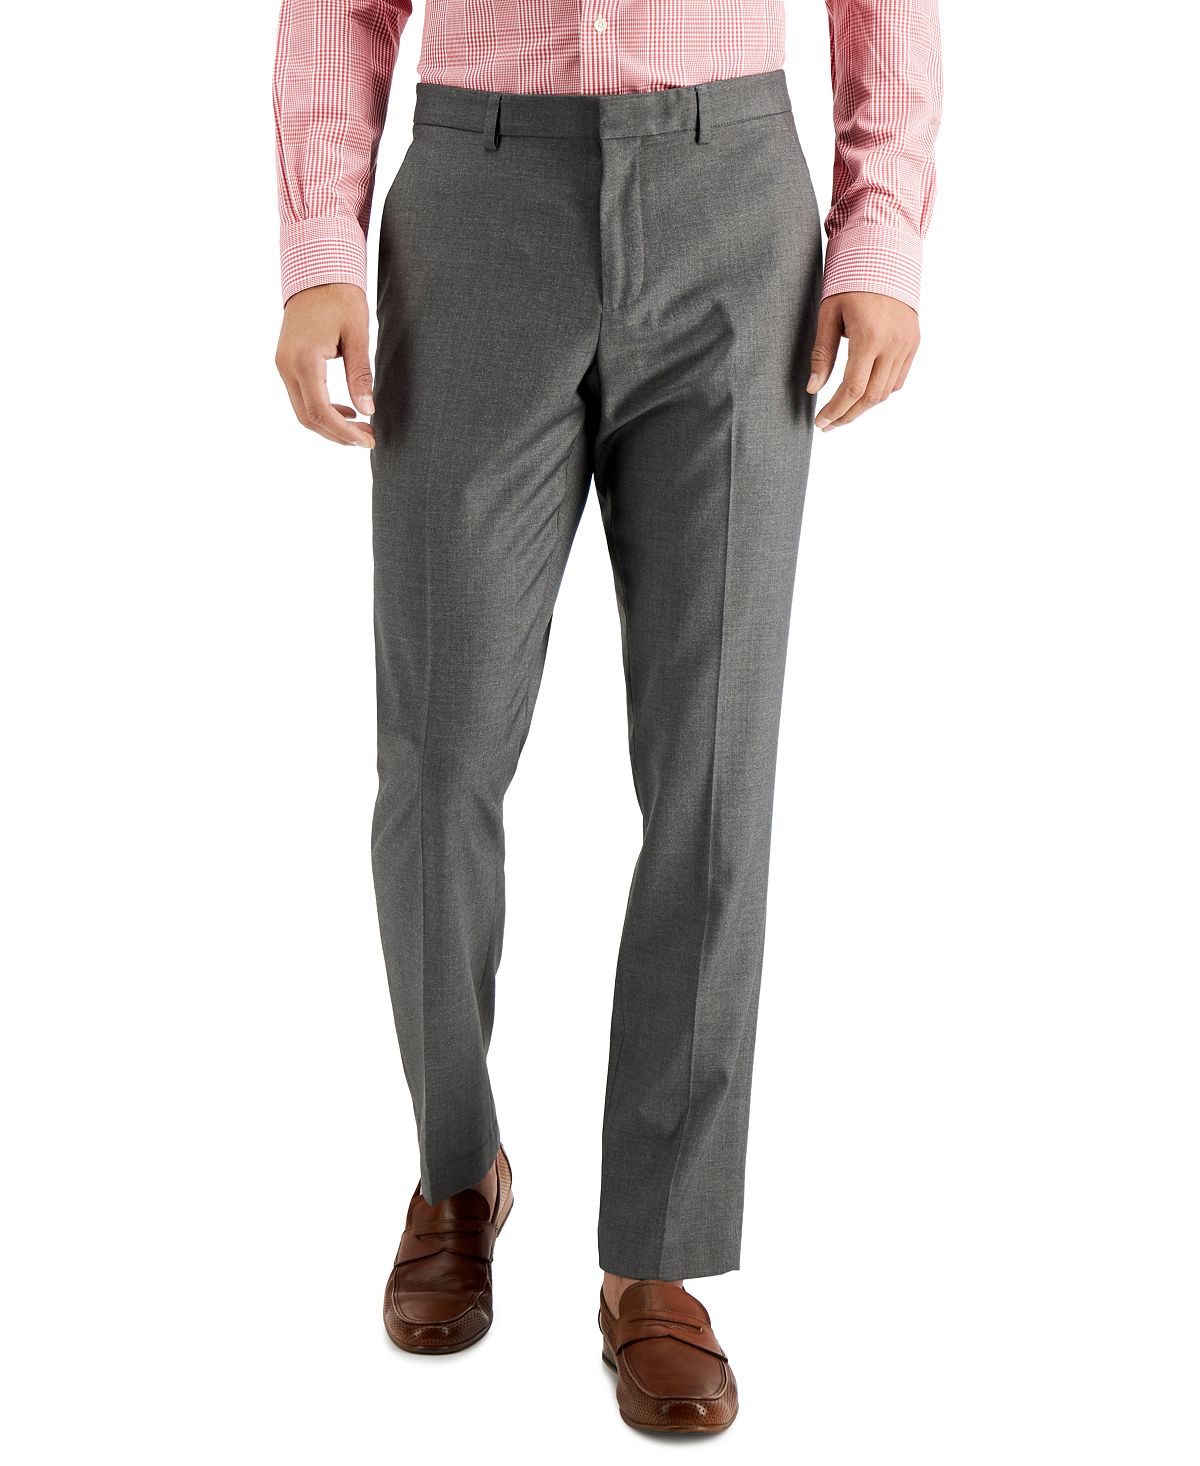 оставайтесь на работе от touson Мужские классические брюки slim fit non-iron performance stretch из меланжевой ткани Perry Ellis Portfolio